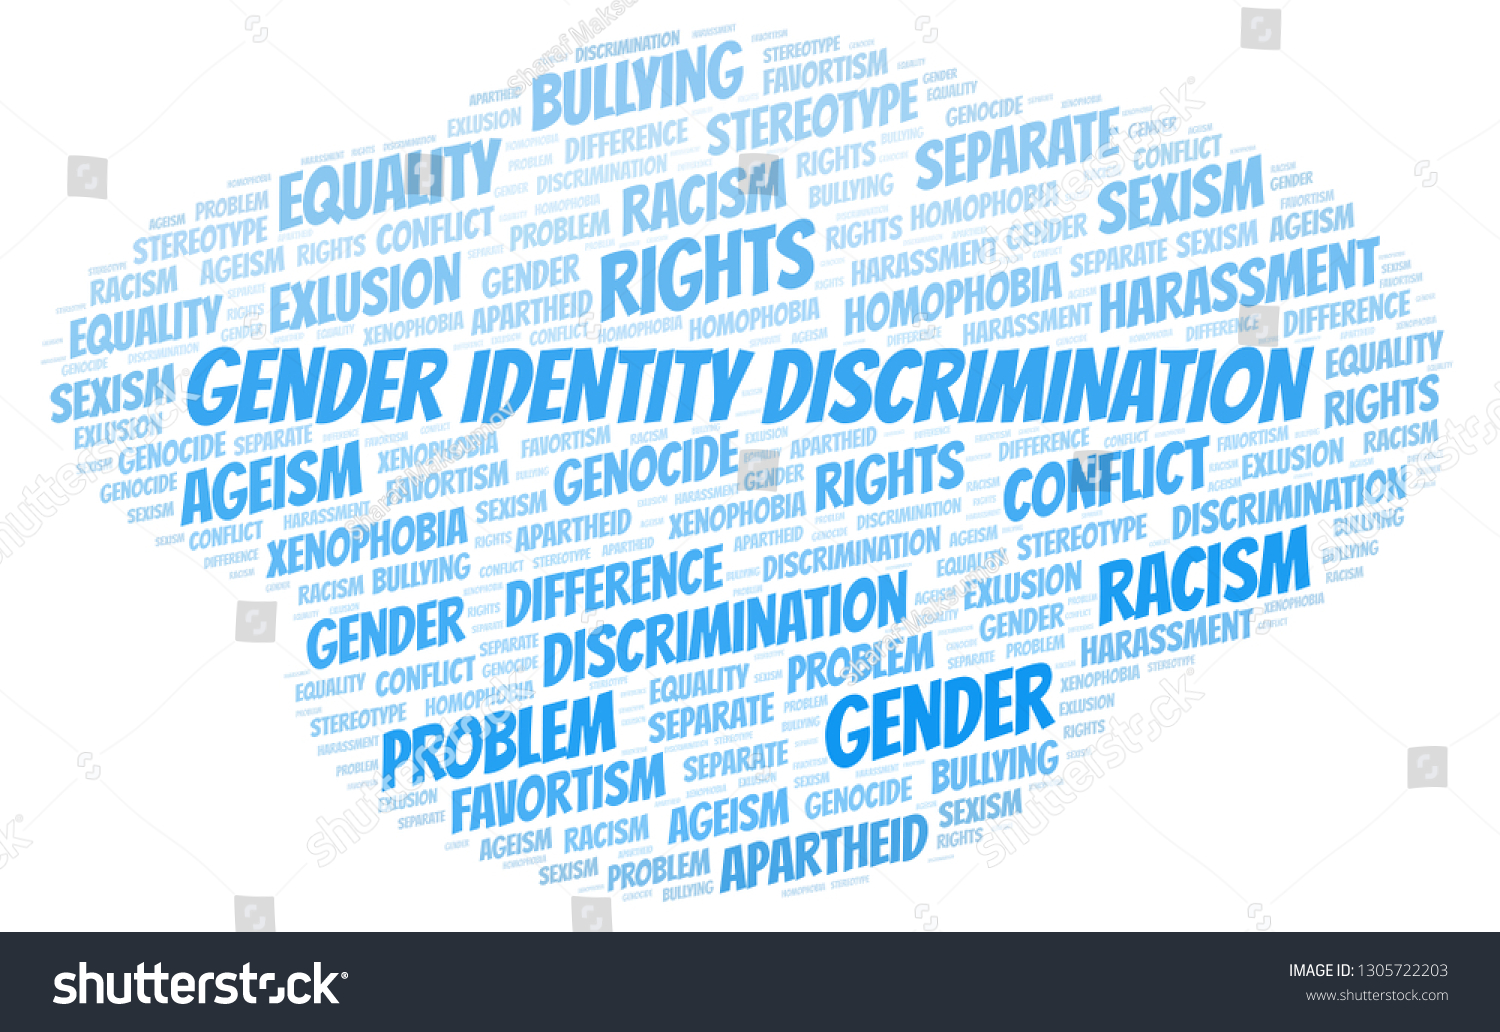 Gender Identity Discrimination Type Discrimination Word Ilustración De Stock 1305722203 5604